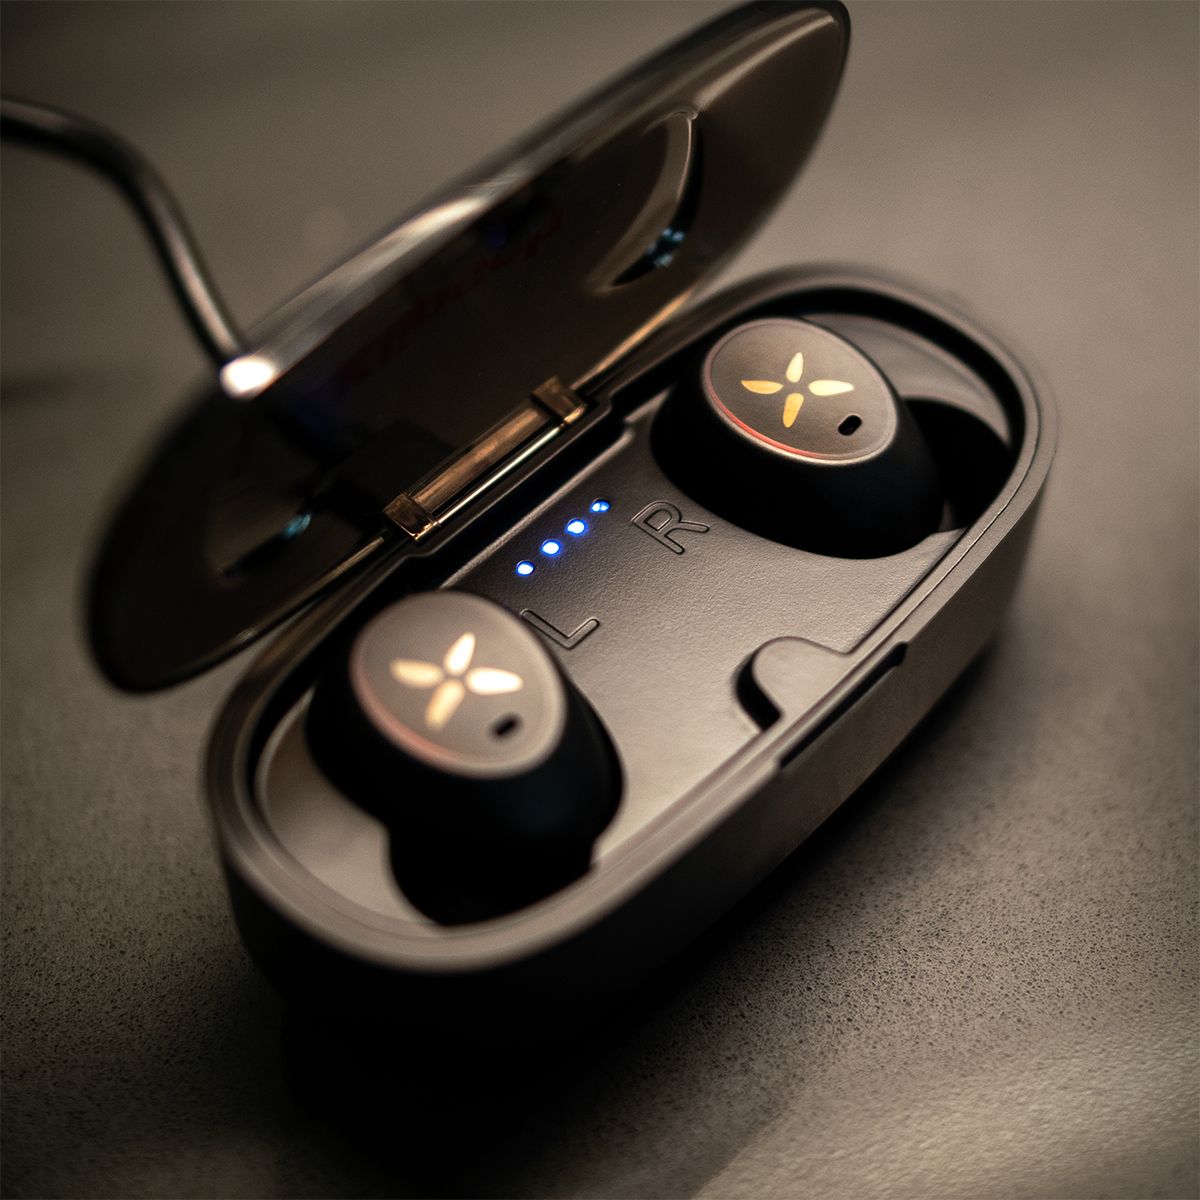 Klipsch S1 True Wireless In-Ear Headphones